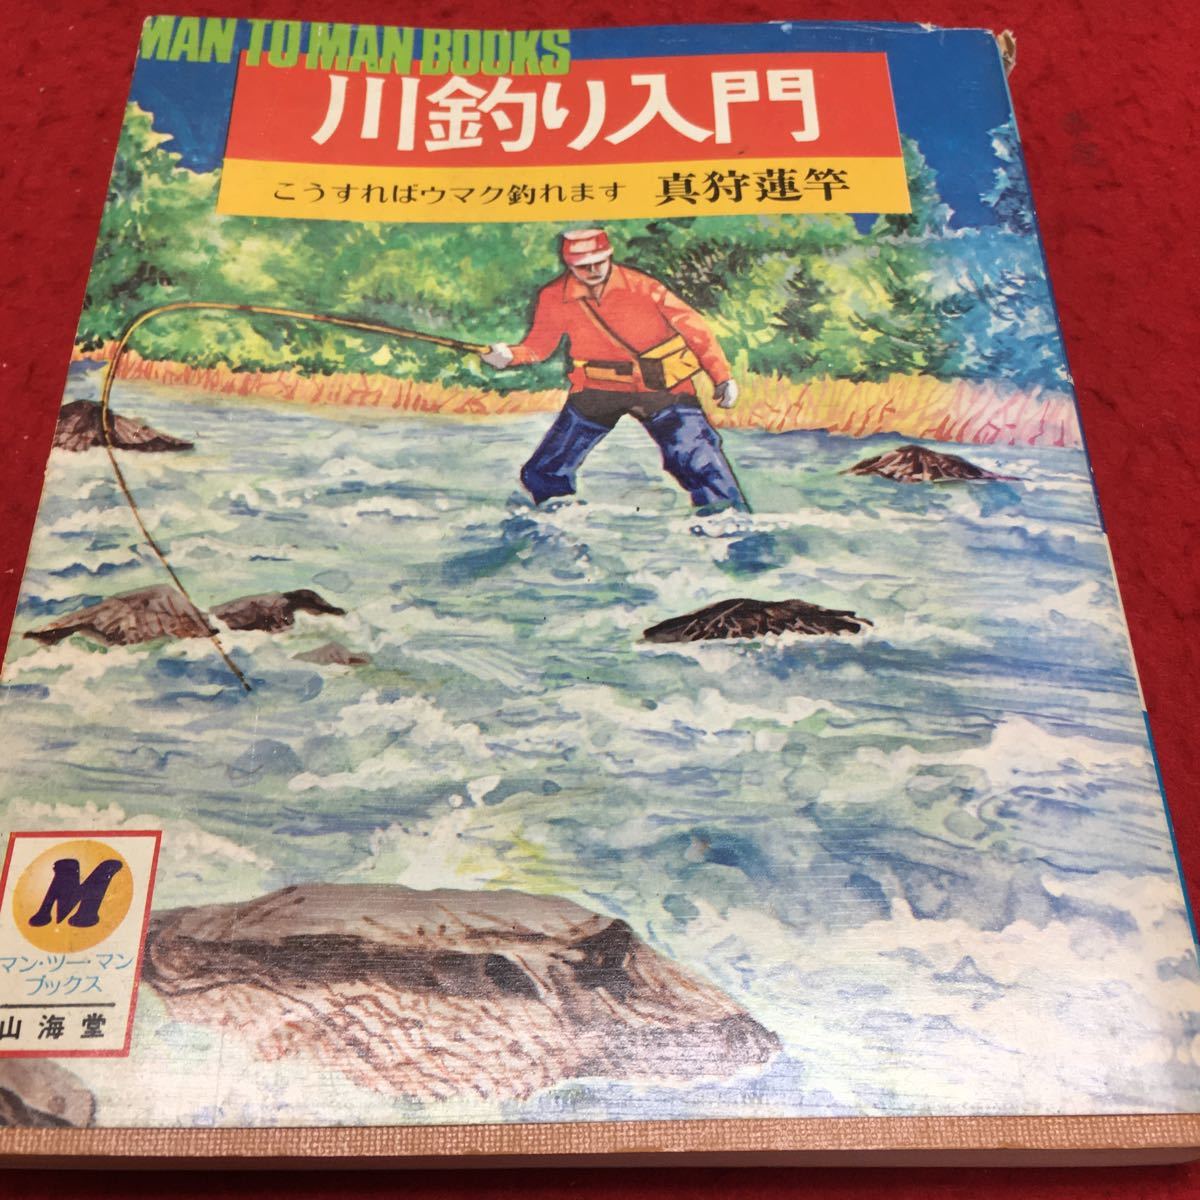 『ペンと箸』 少年川釣りブック　シカケと釣り方これでオーケー その他